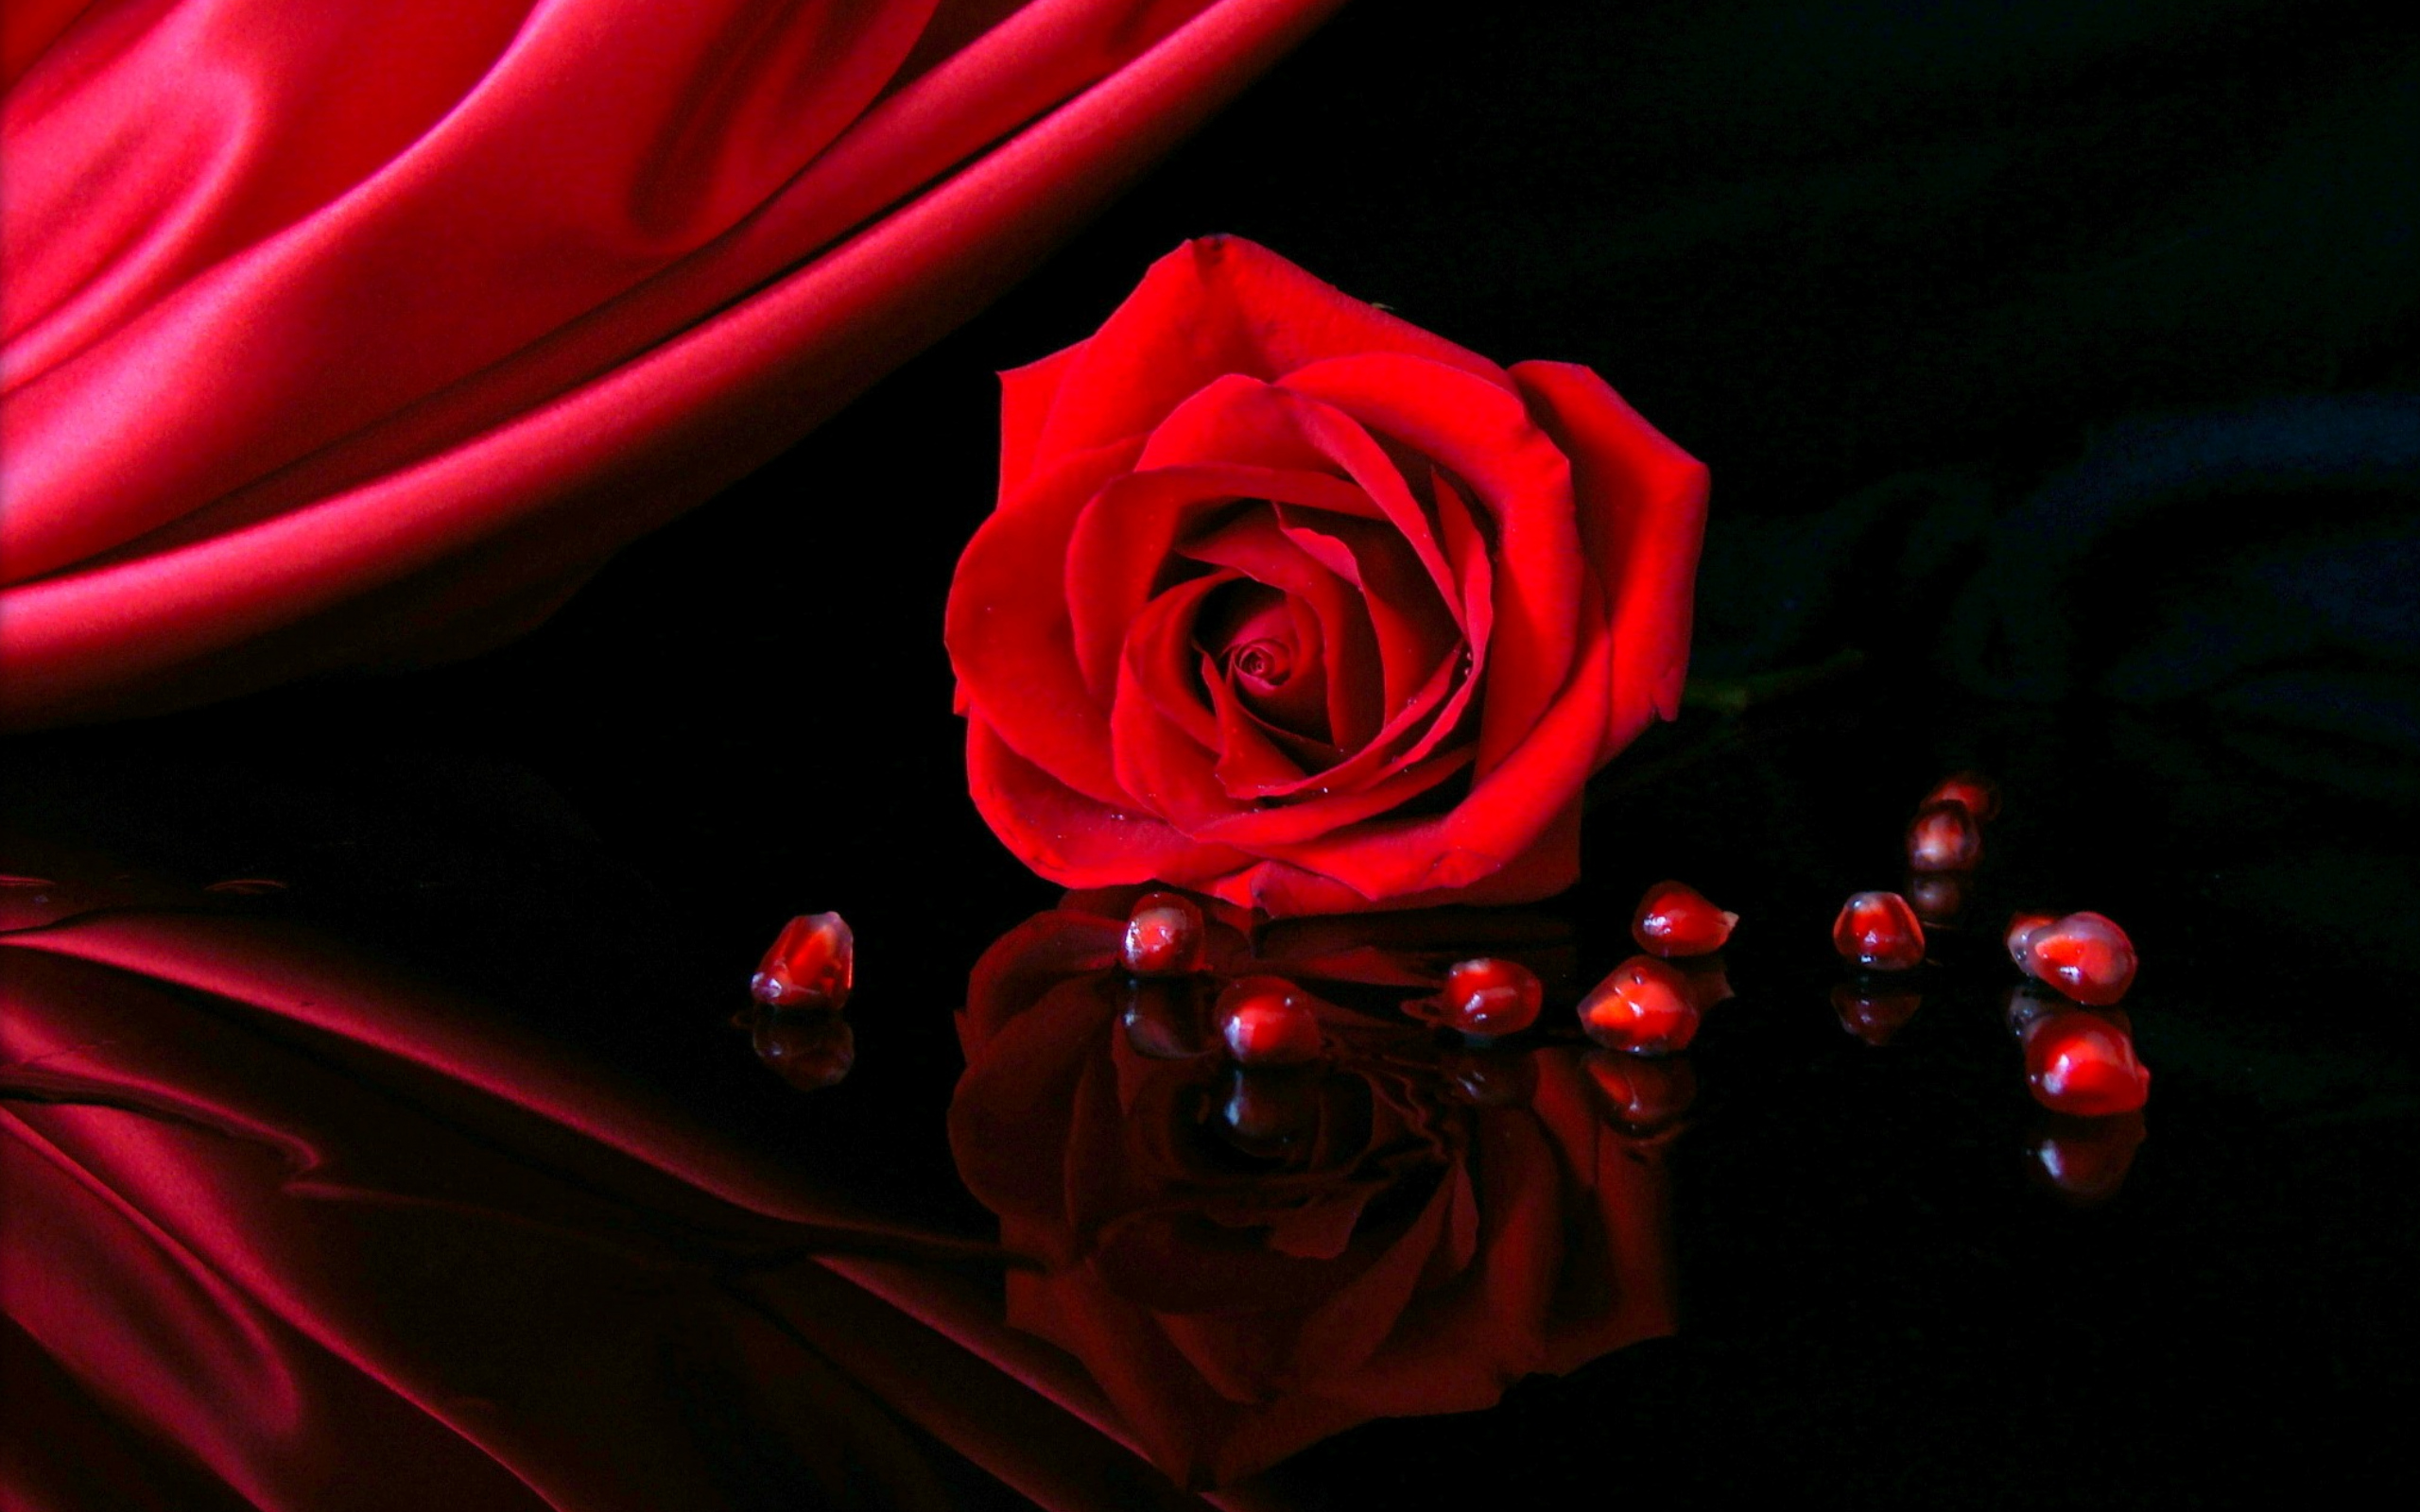 Скачать обои бесплатно Отражение, Цветок, Роза, Красная Роза, Земля/природа, Флауэрсы картинка на рабочий стол ПК